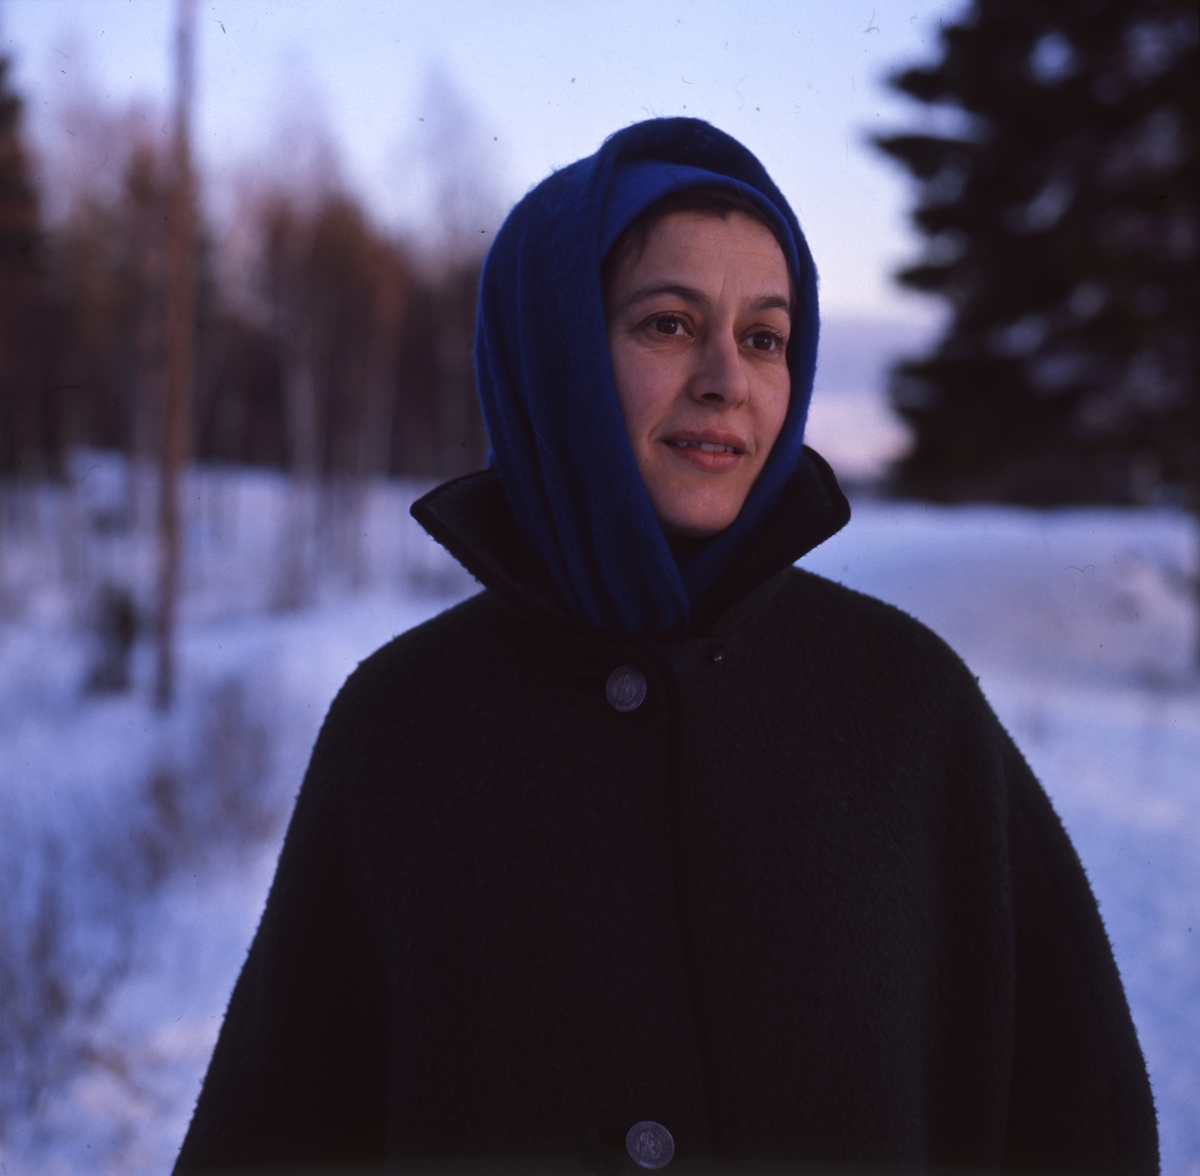 Silversmideskonstnären Rosa Taikon avporträtterad i vinterlandskap.